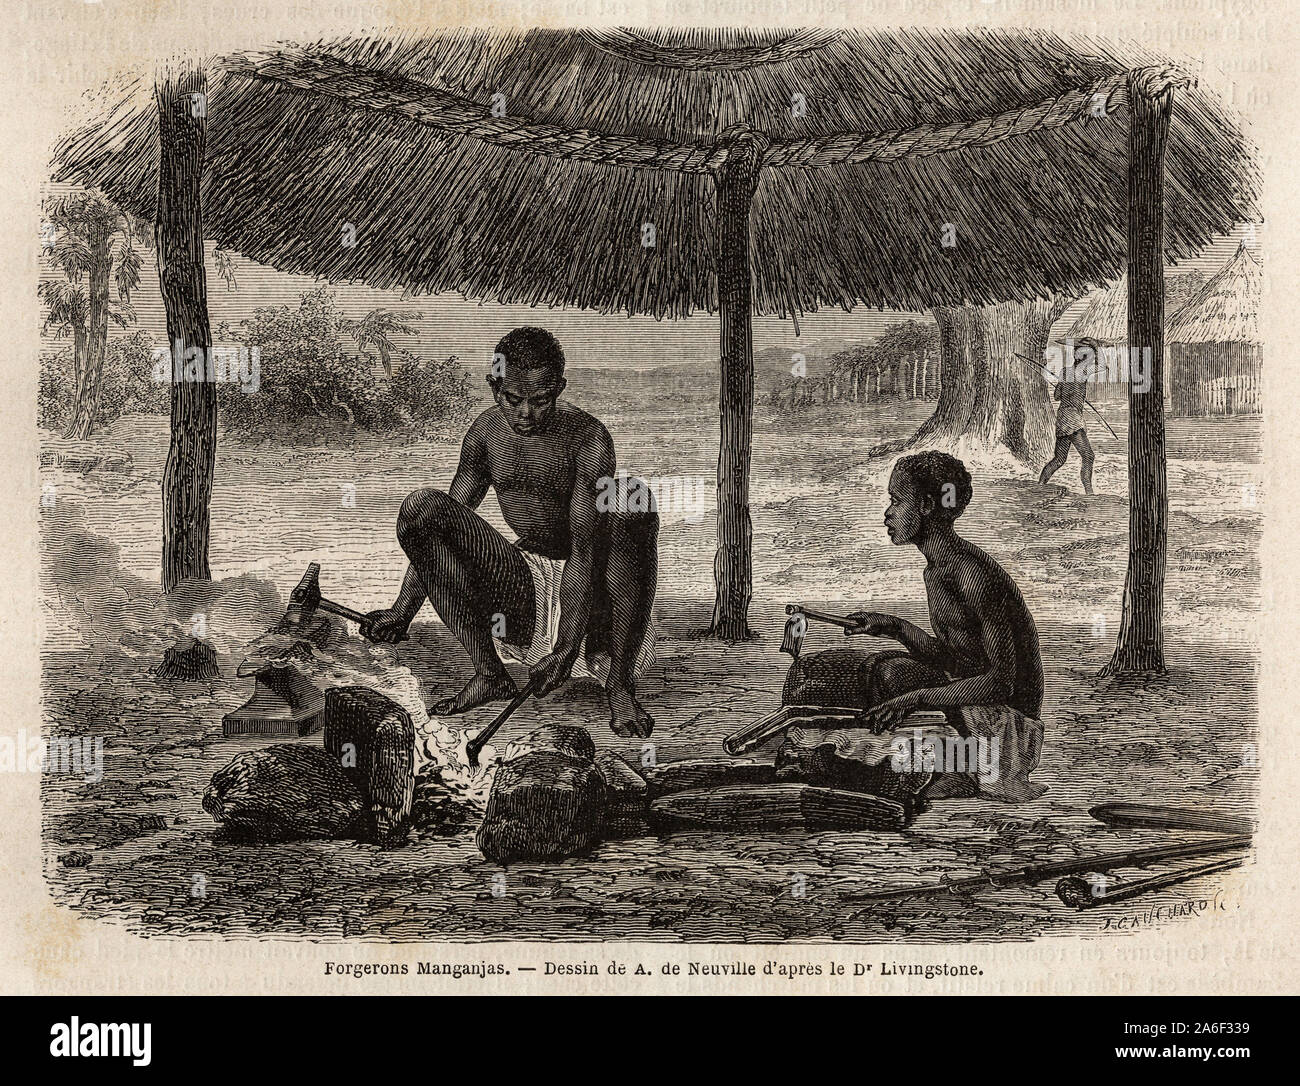 Forgeron manganjas ( ethnie de la region du Zambeze). Gravure pour illustrer les premiers voyages du docteur Livingstone en Afrique Australe de 1840 a Stock Photo